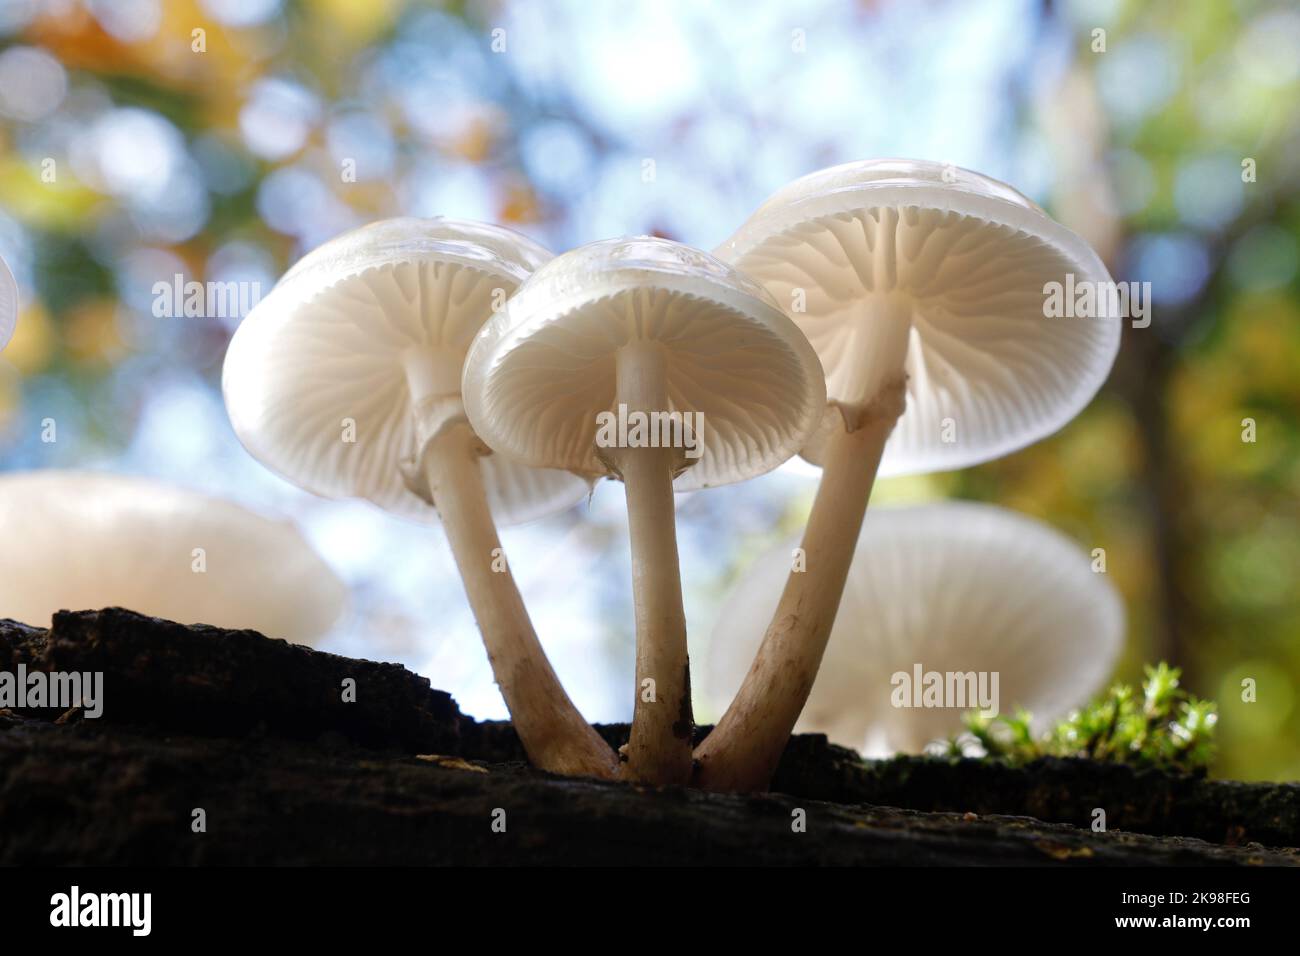 El hongo de porcelana, Oudemansiella mucidaa, muestra las maravillosas propiedades translúcidas que le dan a este hongo salvaje su nombre inglés común Foto de stock